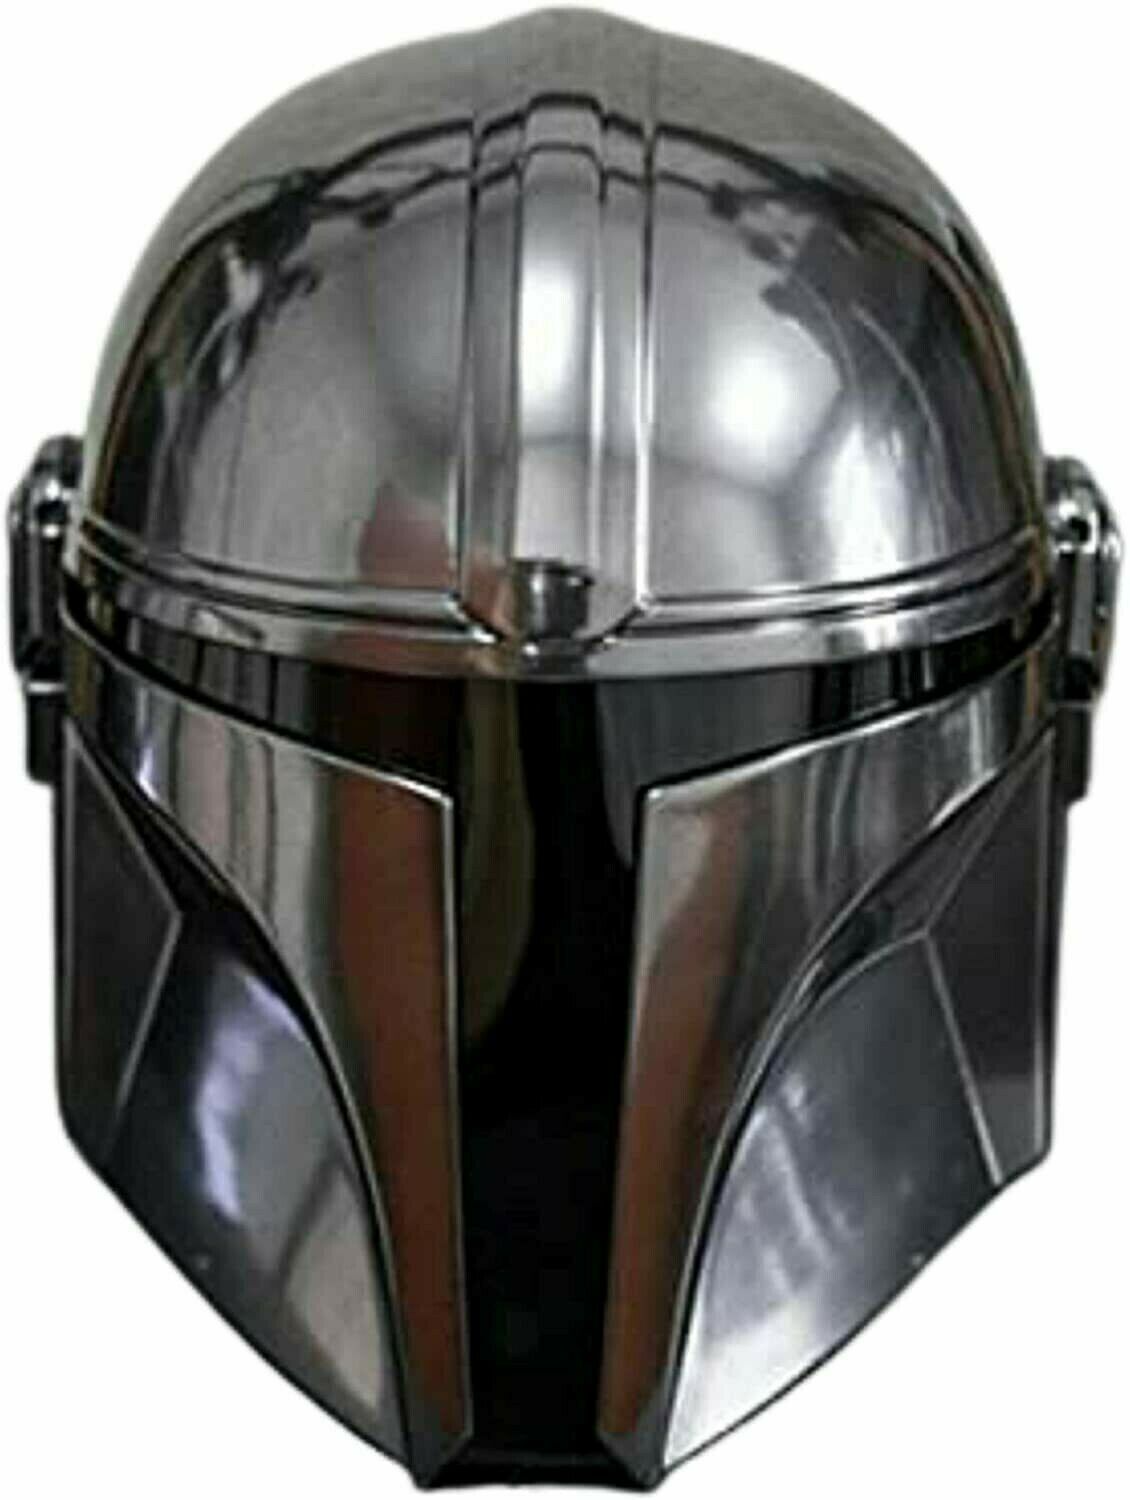 Steel Mandalorian Helmet with Liner and Chin Strap, Star Wars Movie helmet helm